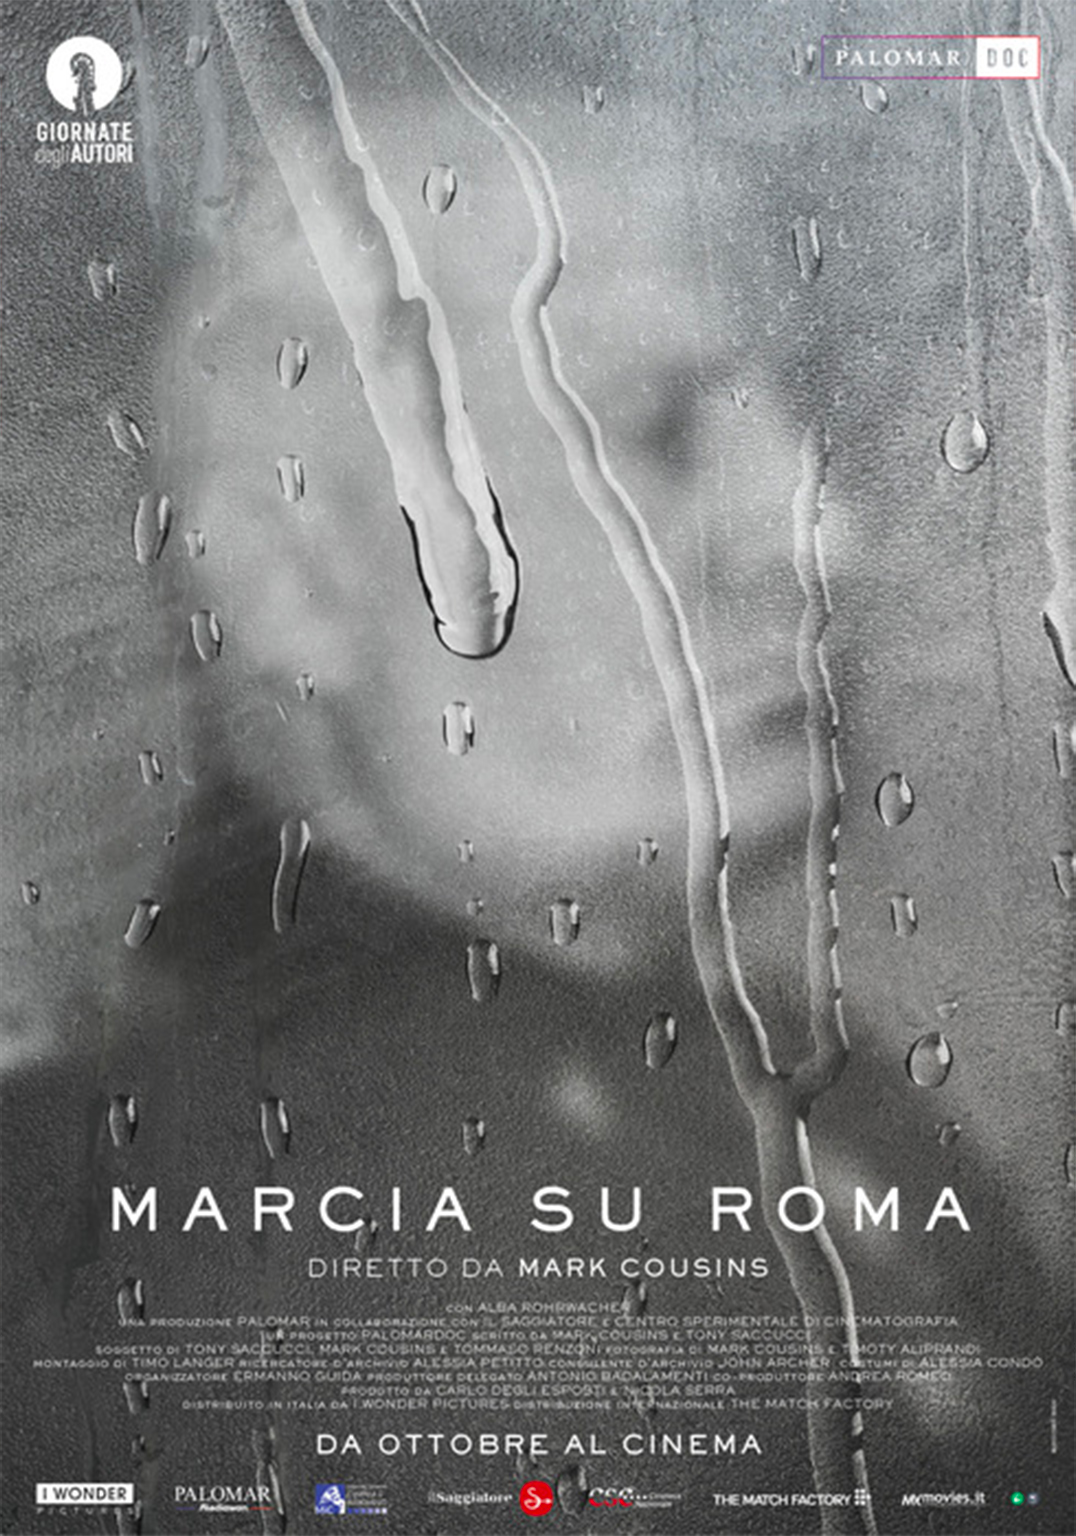 MARCIA SU ROMA – THE MARCH ON ROME